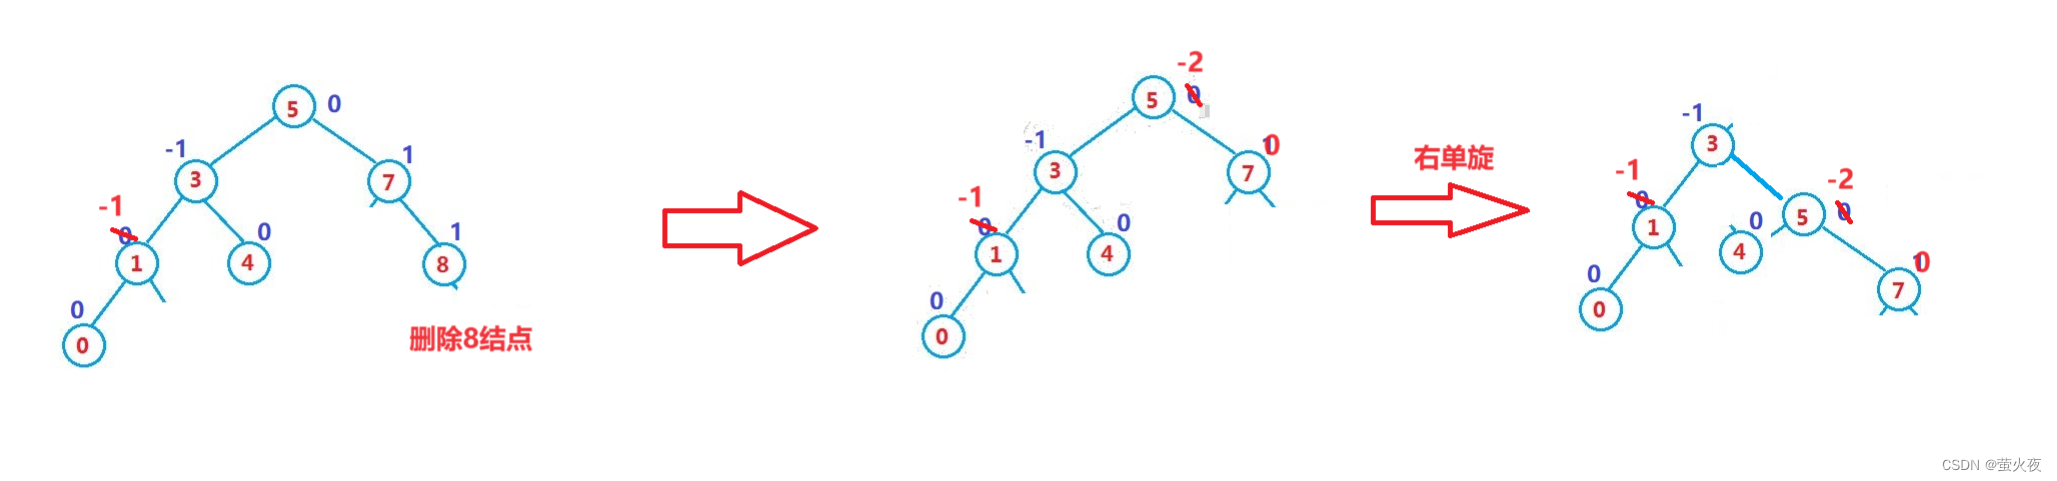 数据结构之AVL树